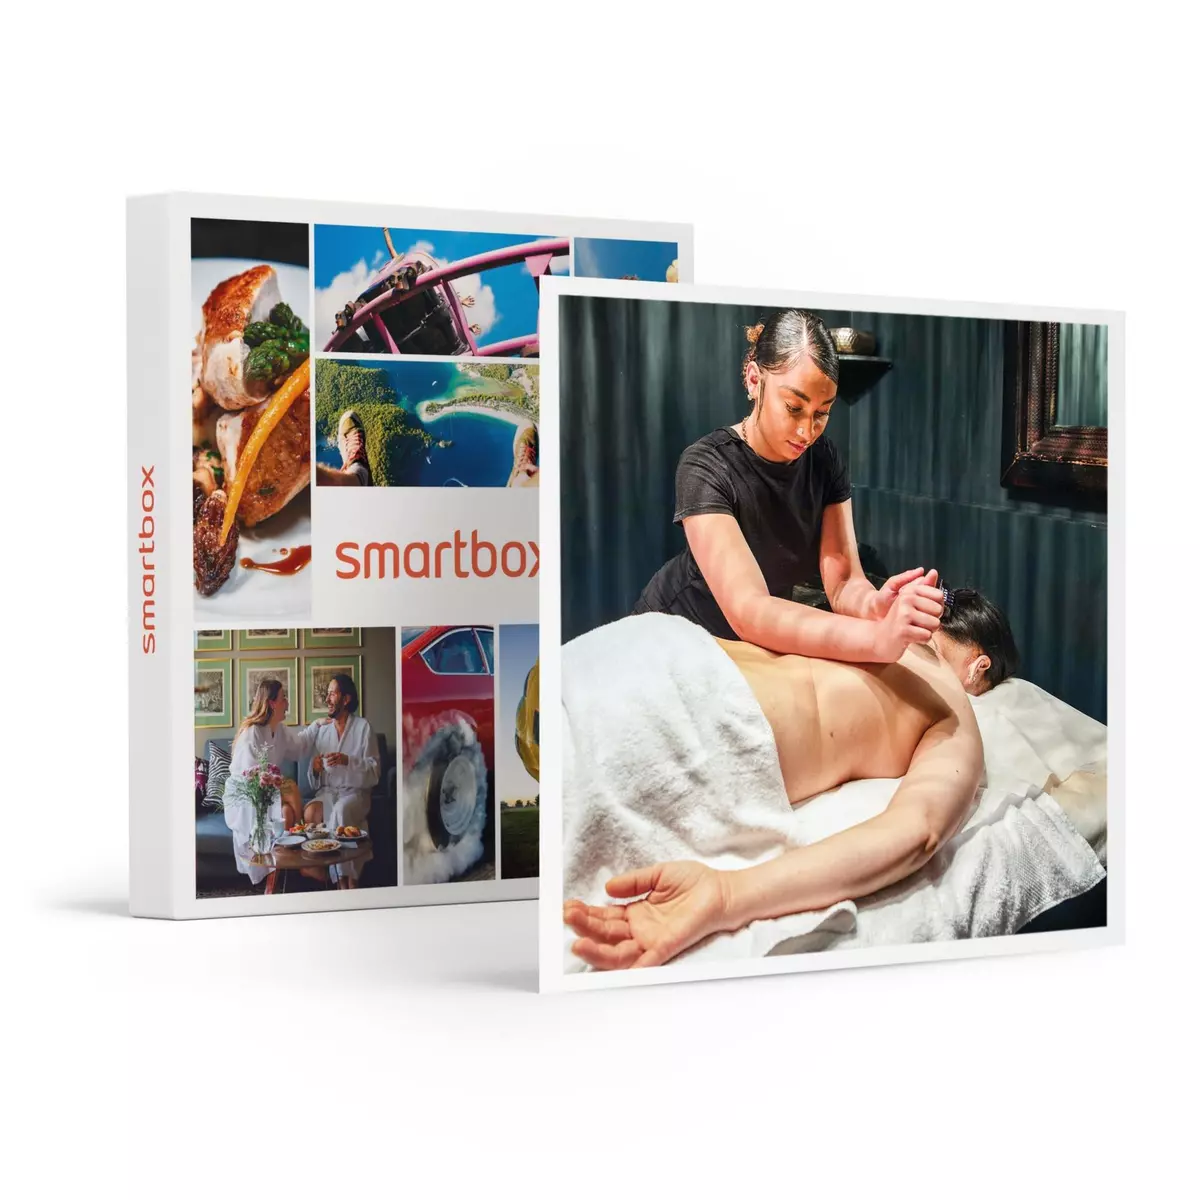 Smartbox Parenthèse détente à deux avec massage, gommage et accès au hammam - Coffret Cadeau Bien-être